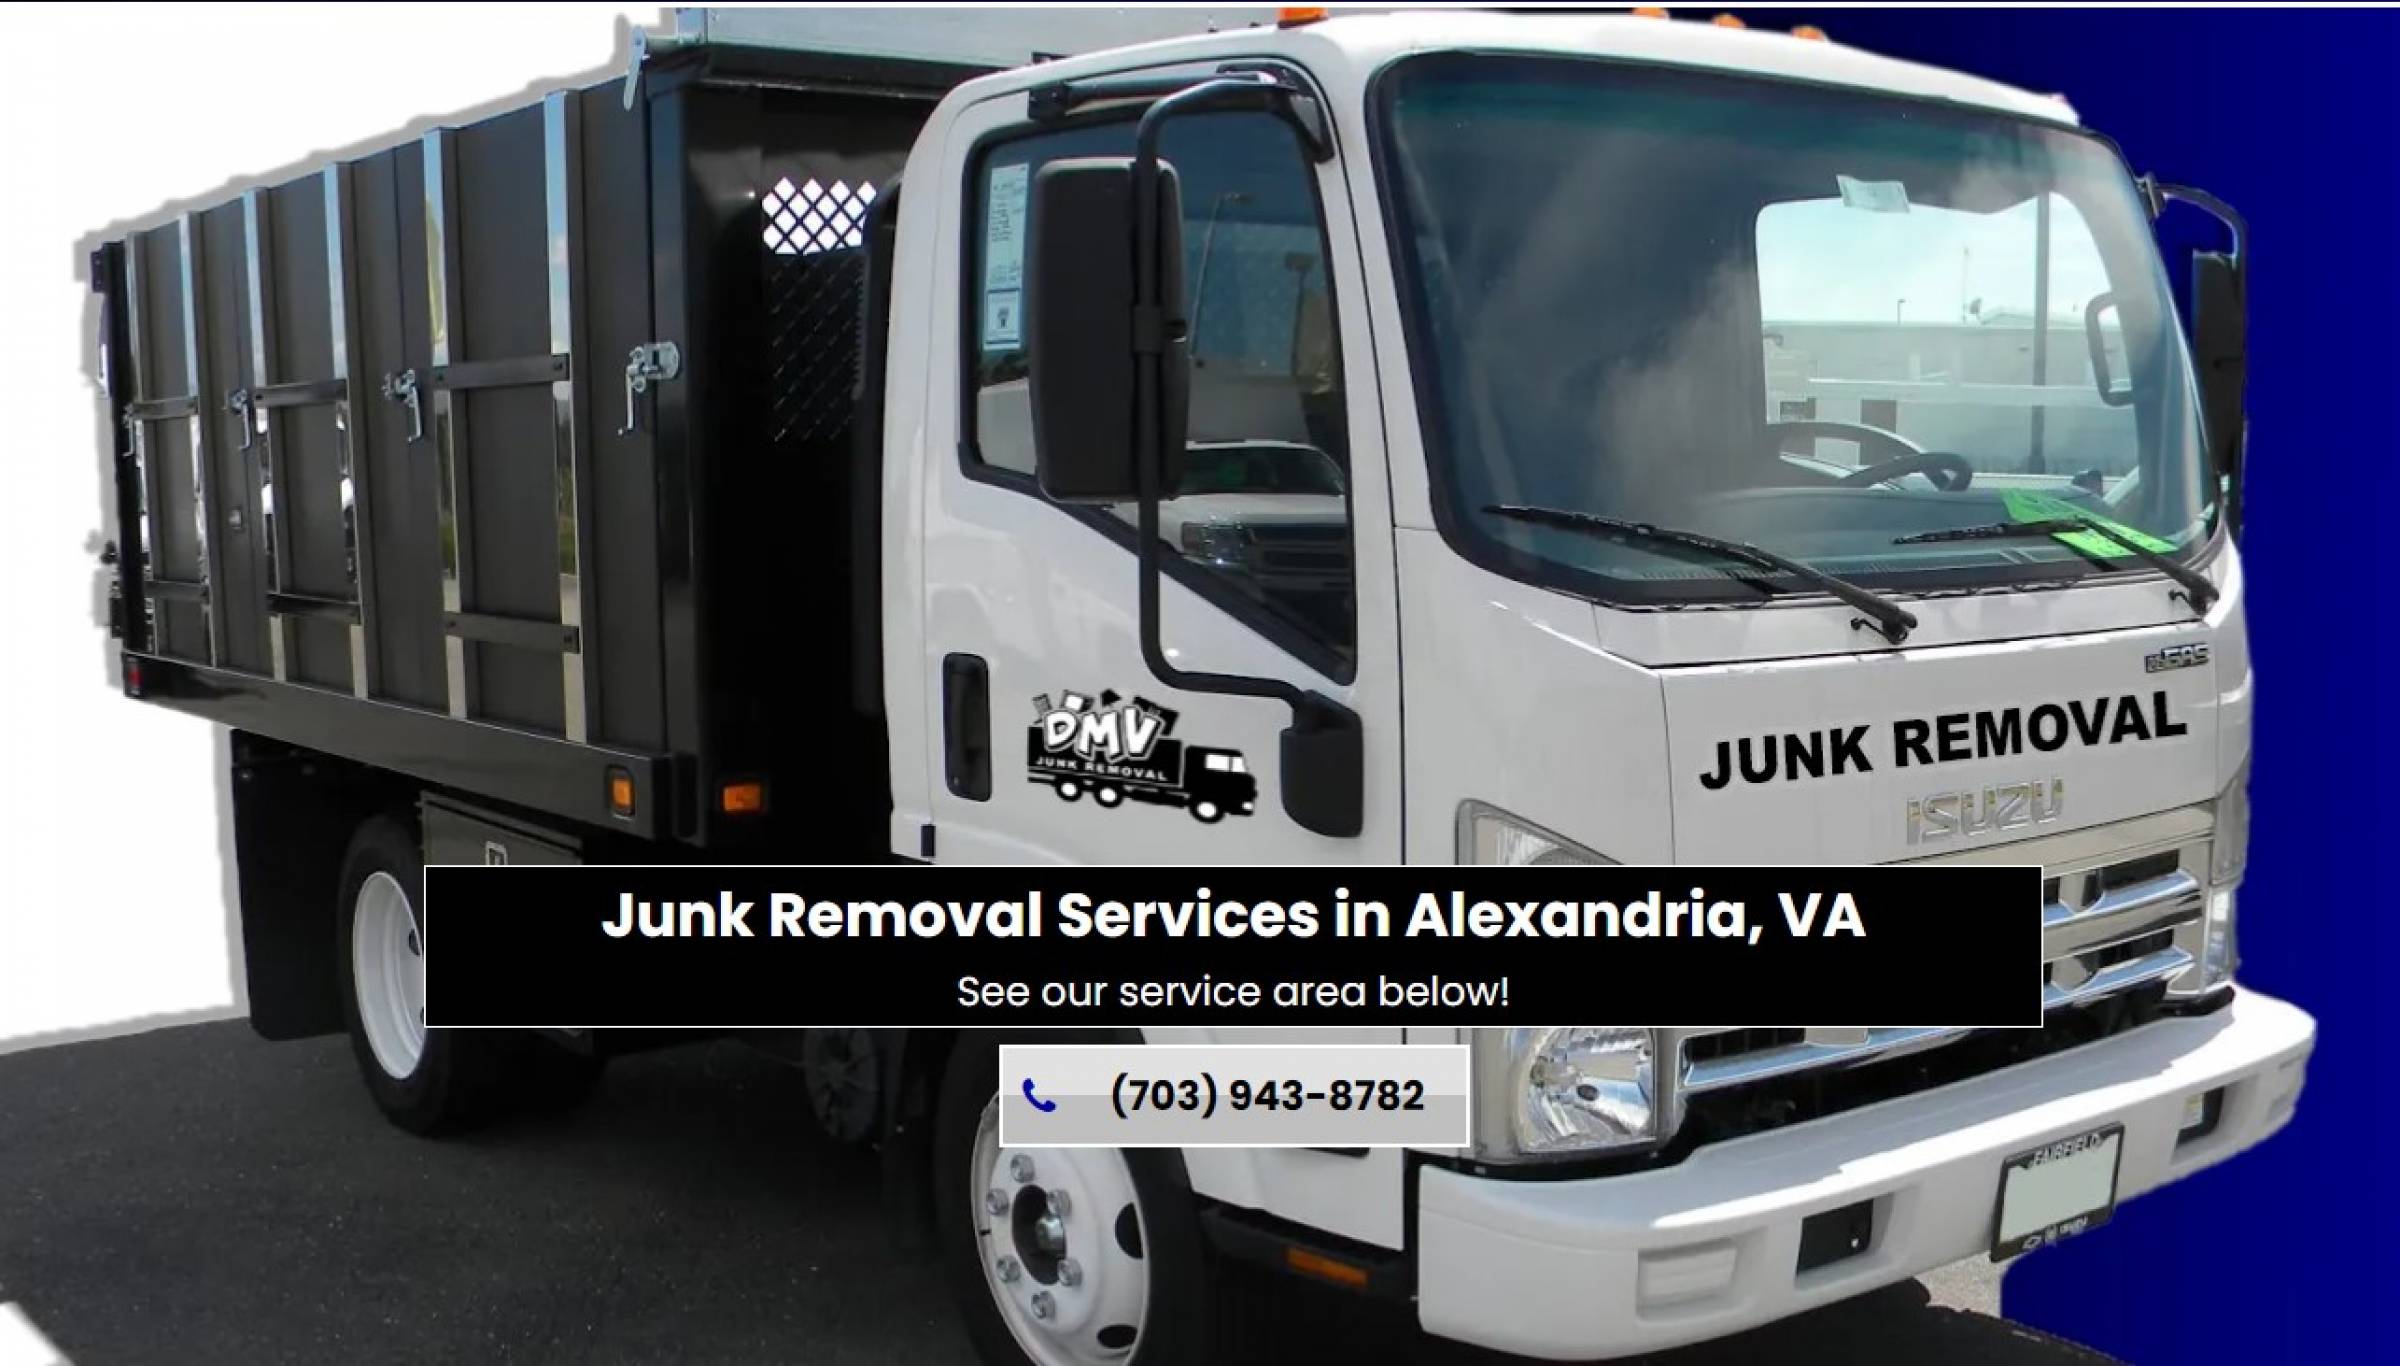 DMV Junk Removal